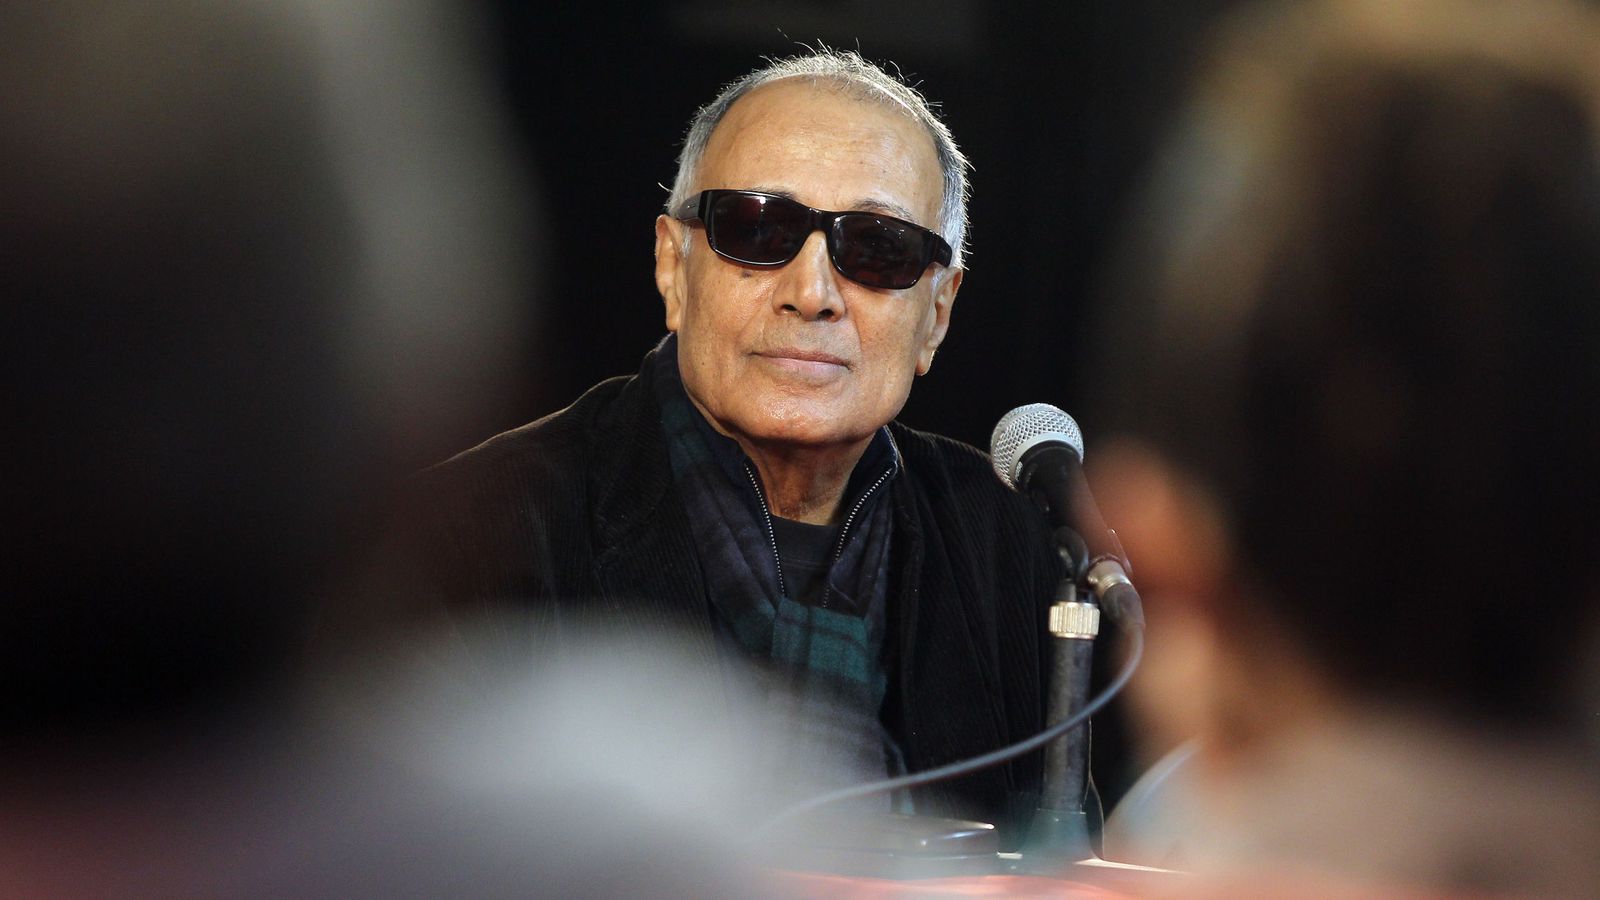 Foto: Abbas Kiarostami en una charla en Cuba el pasado mes de enero